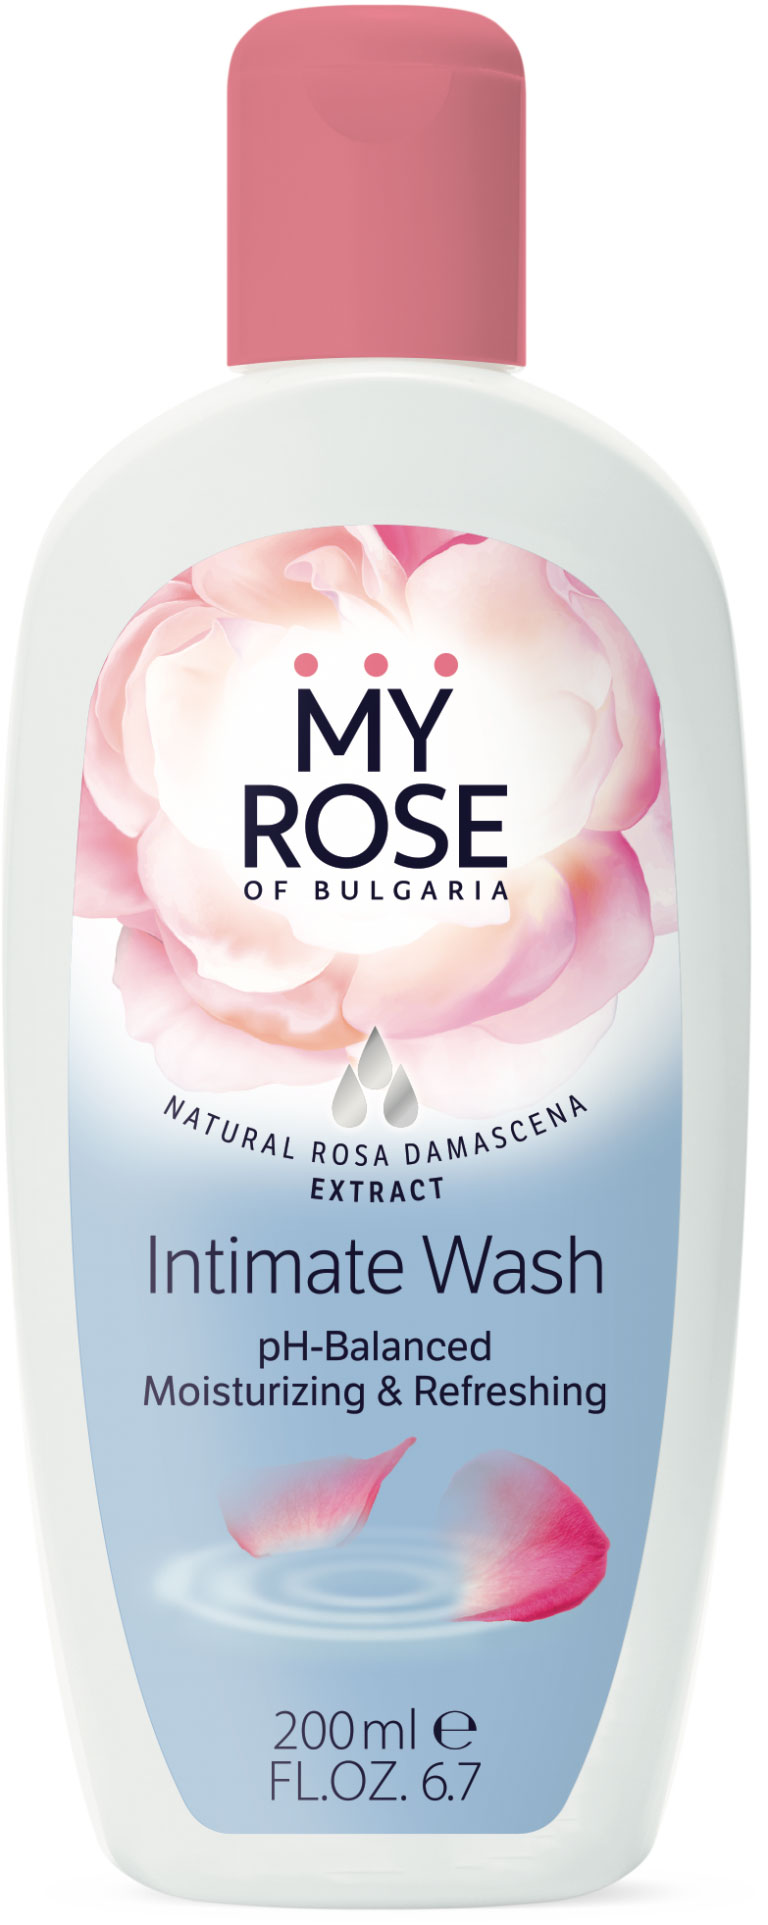 My Rose of Bulgaria Intimate Wash | Ph BalaNatures Carnivaled Moisturizing and Refreshes Skin | 200ml